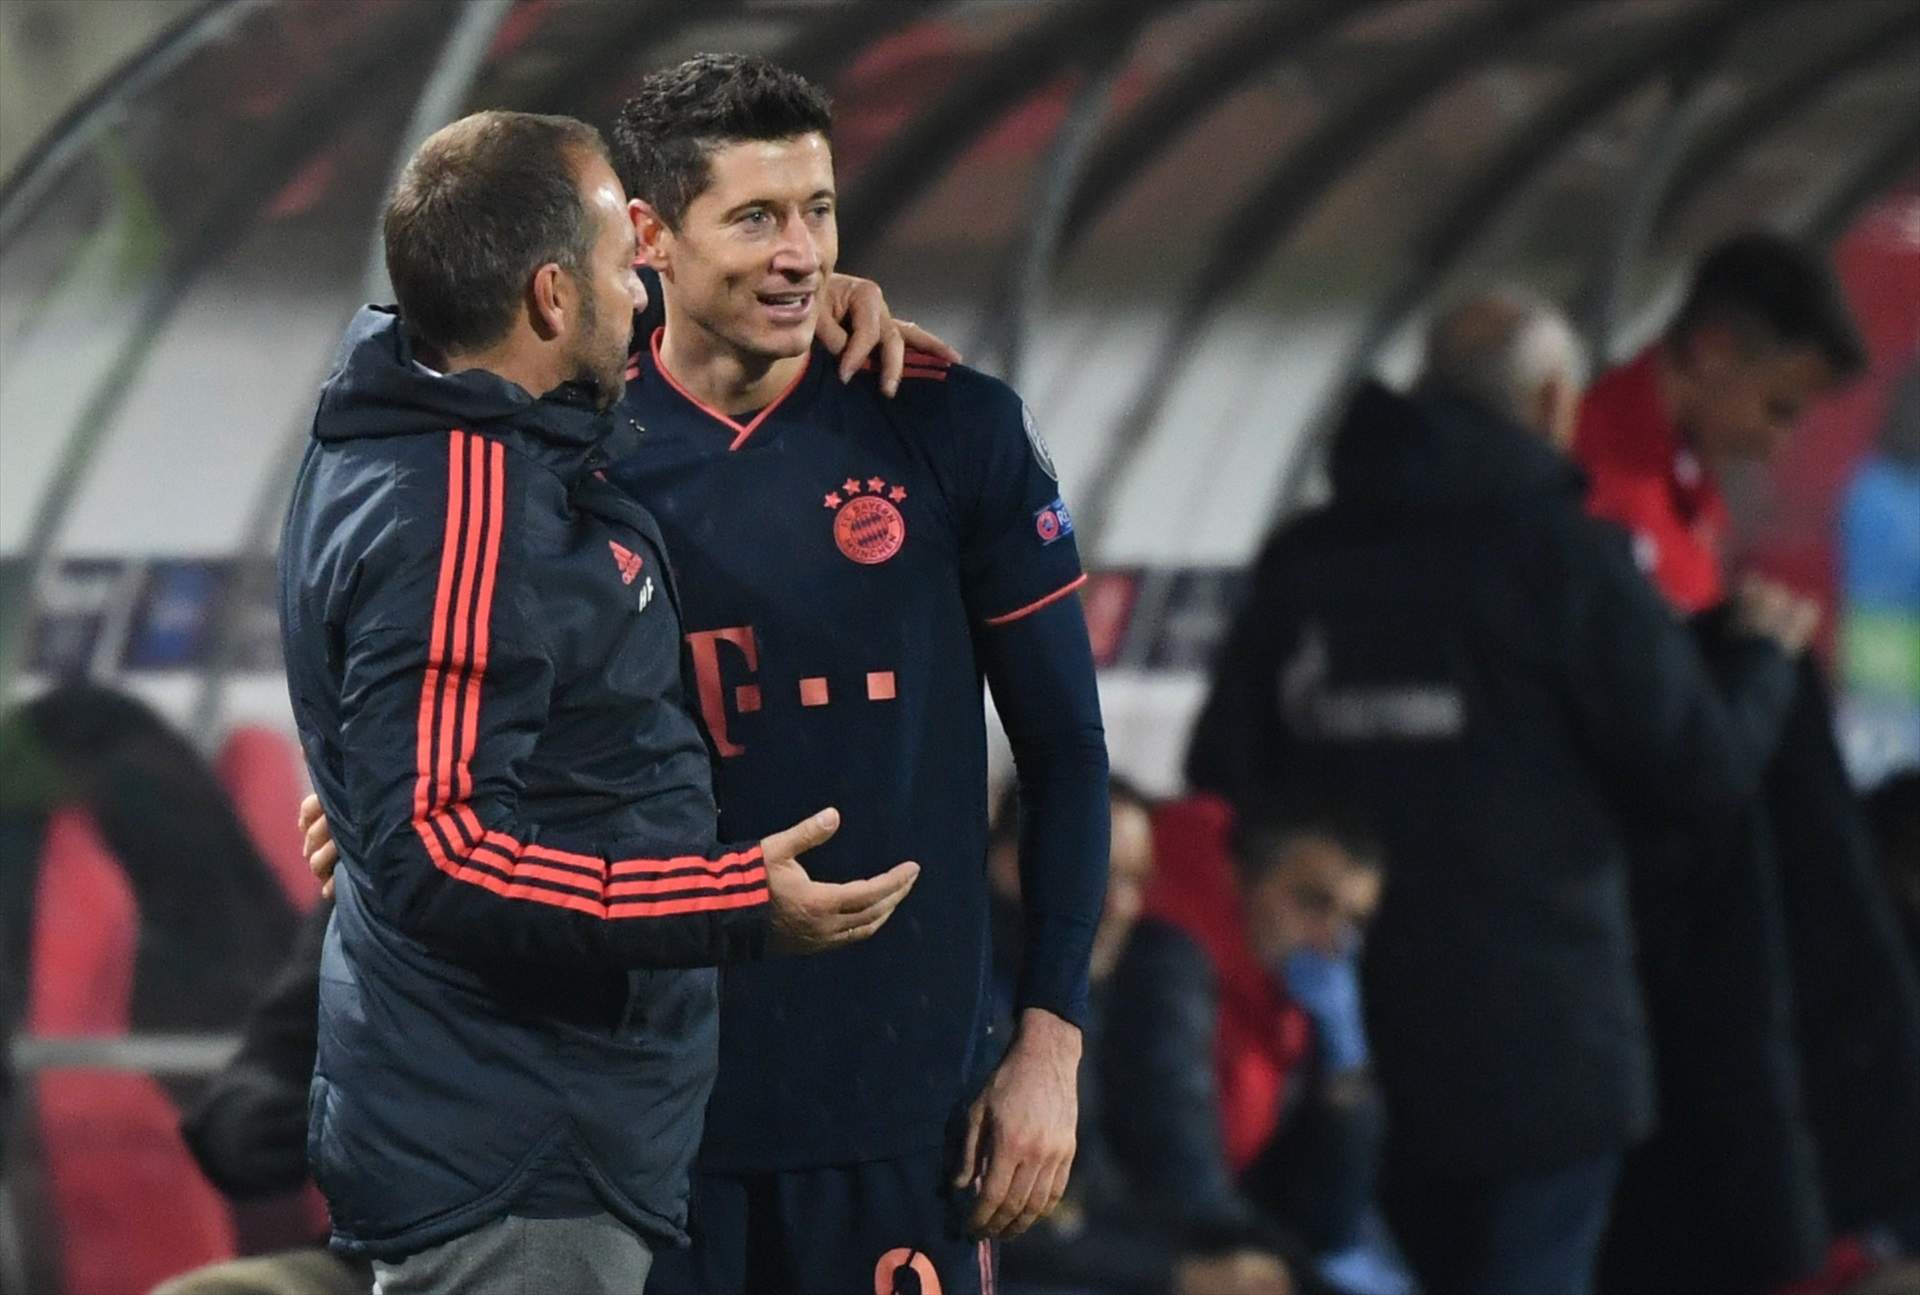 Adeu al Barça, els dubtes de Flick acosten el fitxatge al Bayern de Munic